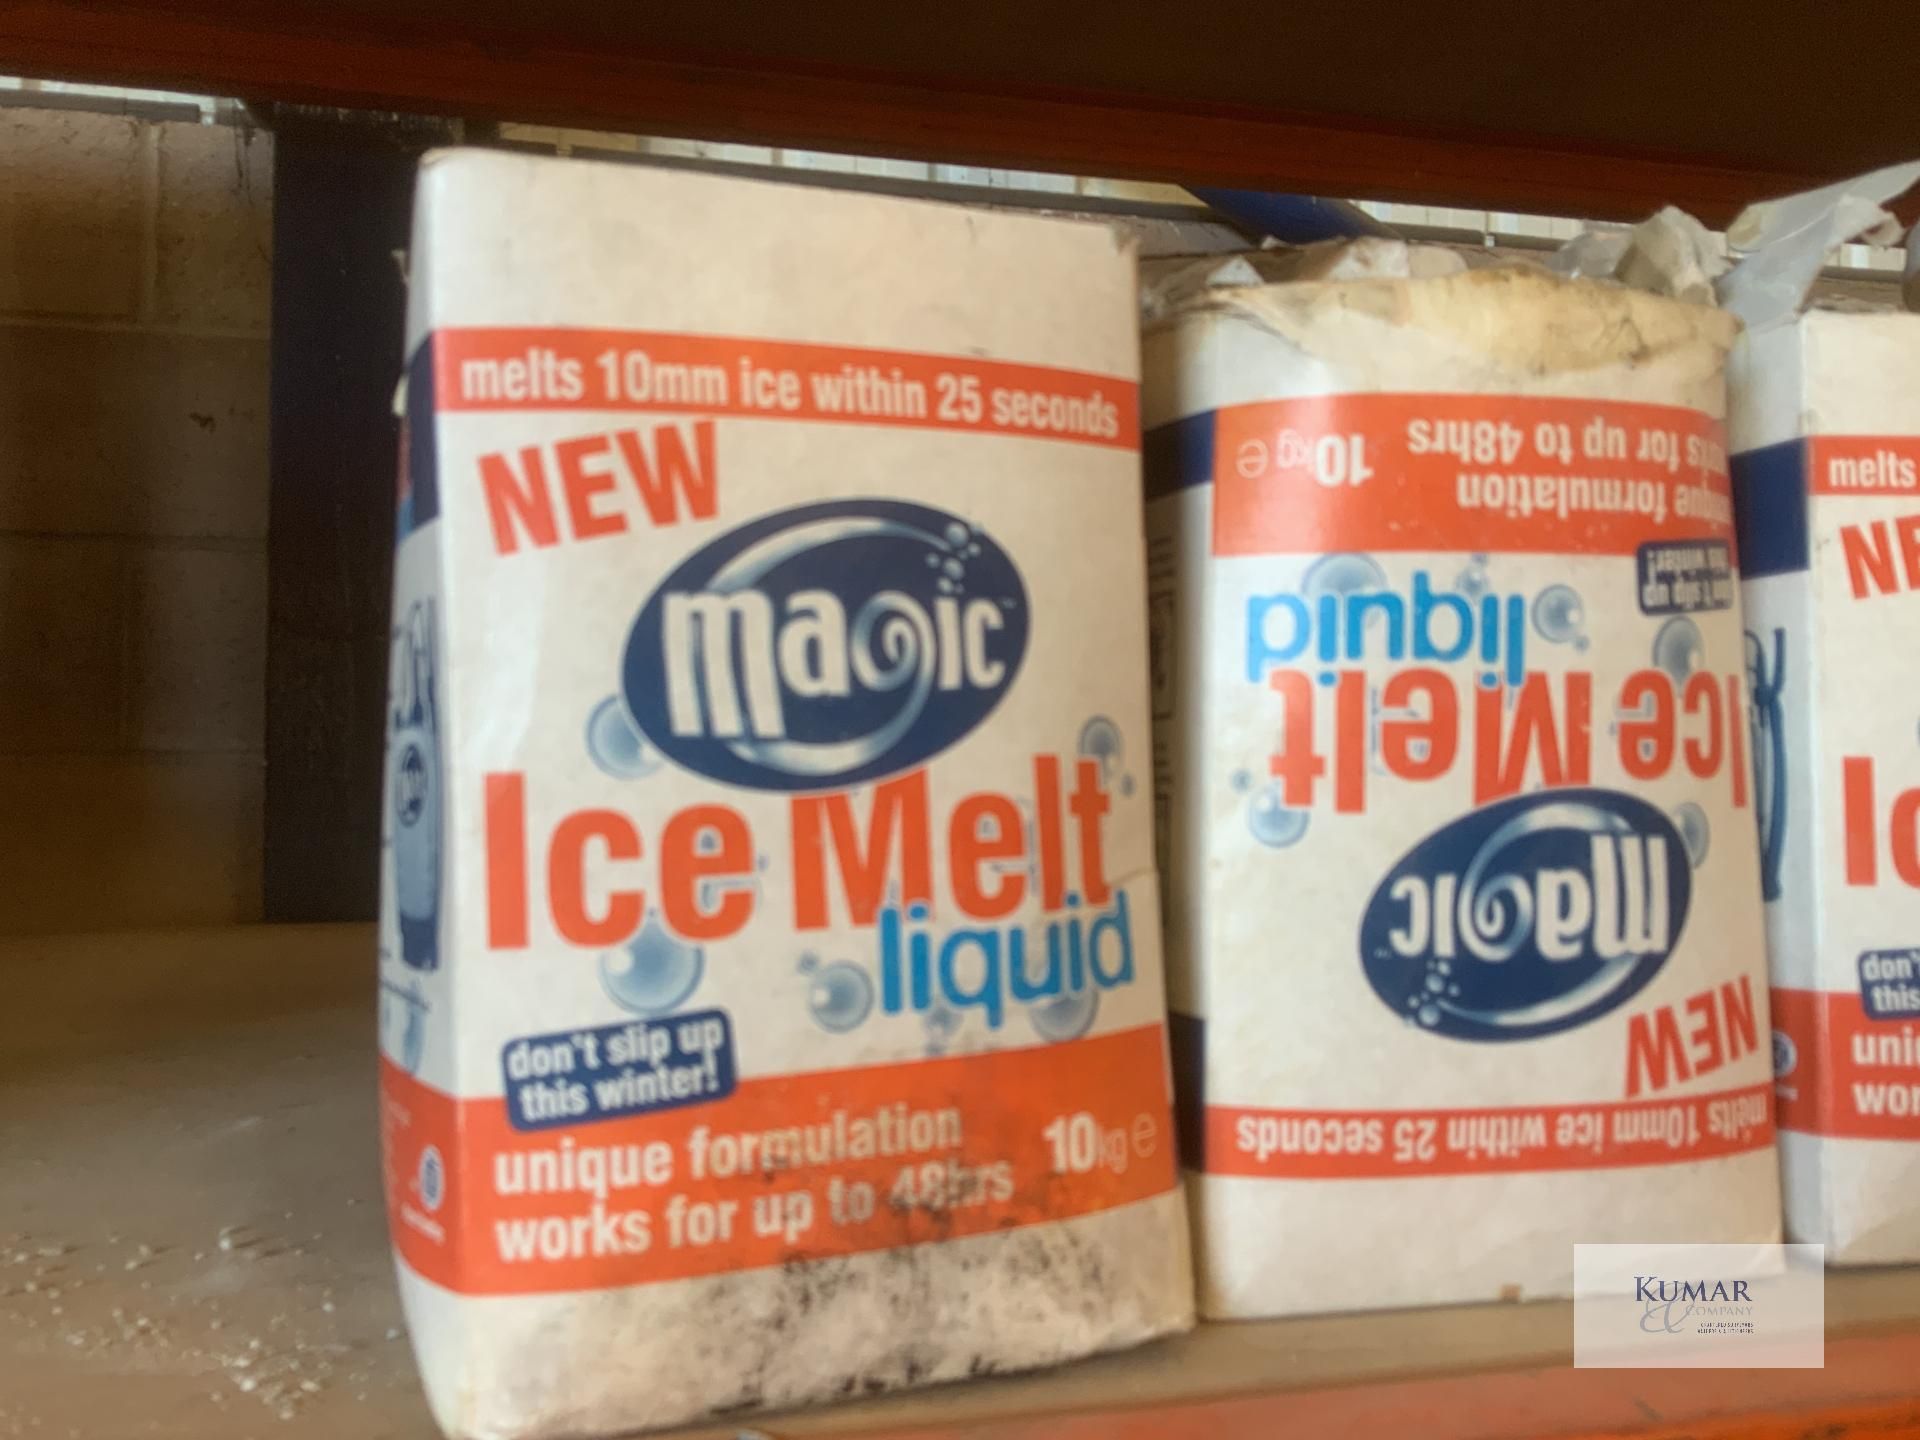 Magic ice :ice melt - Image 4 of 5